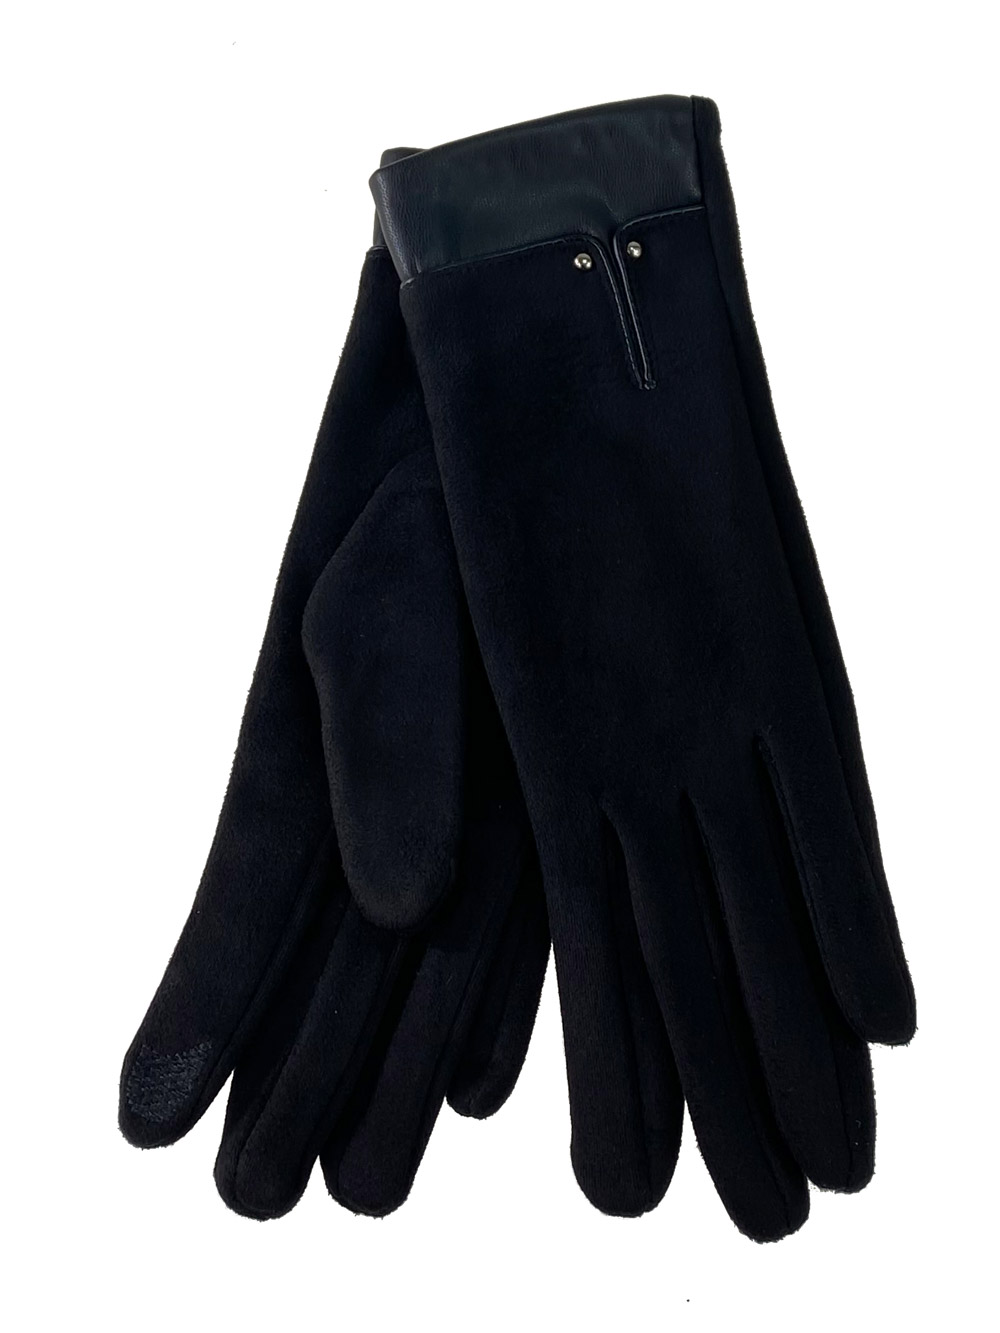 Велюровые женские перчатки с манжетой из натуральной кожи, цвет чёрный